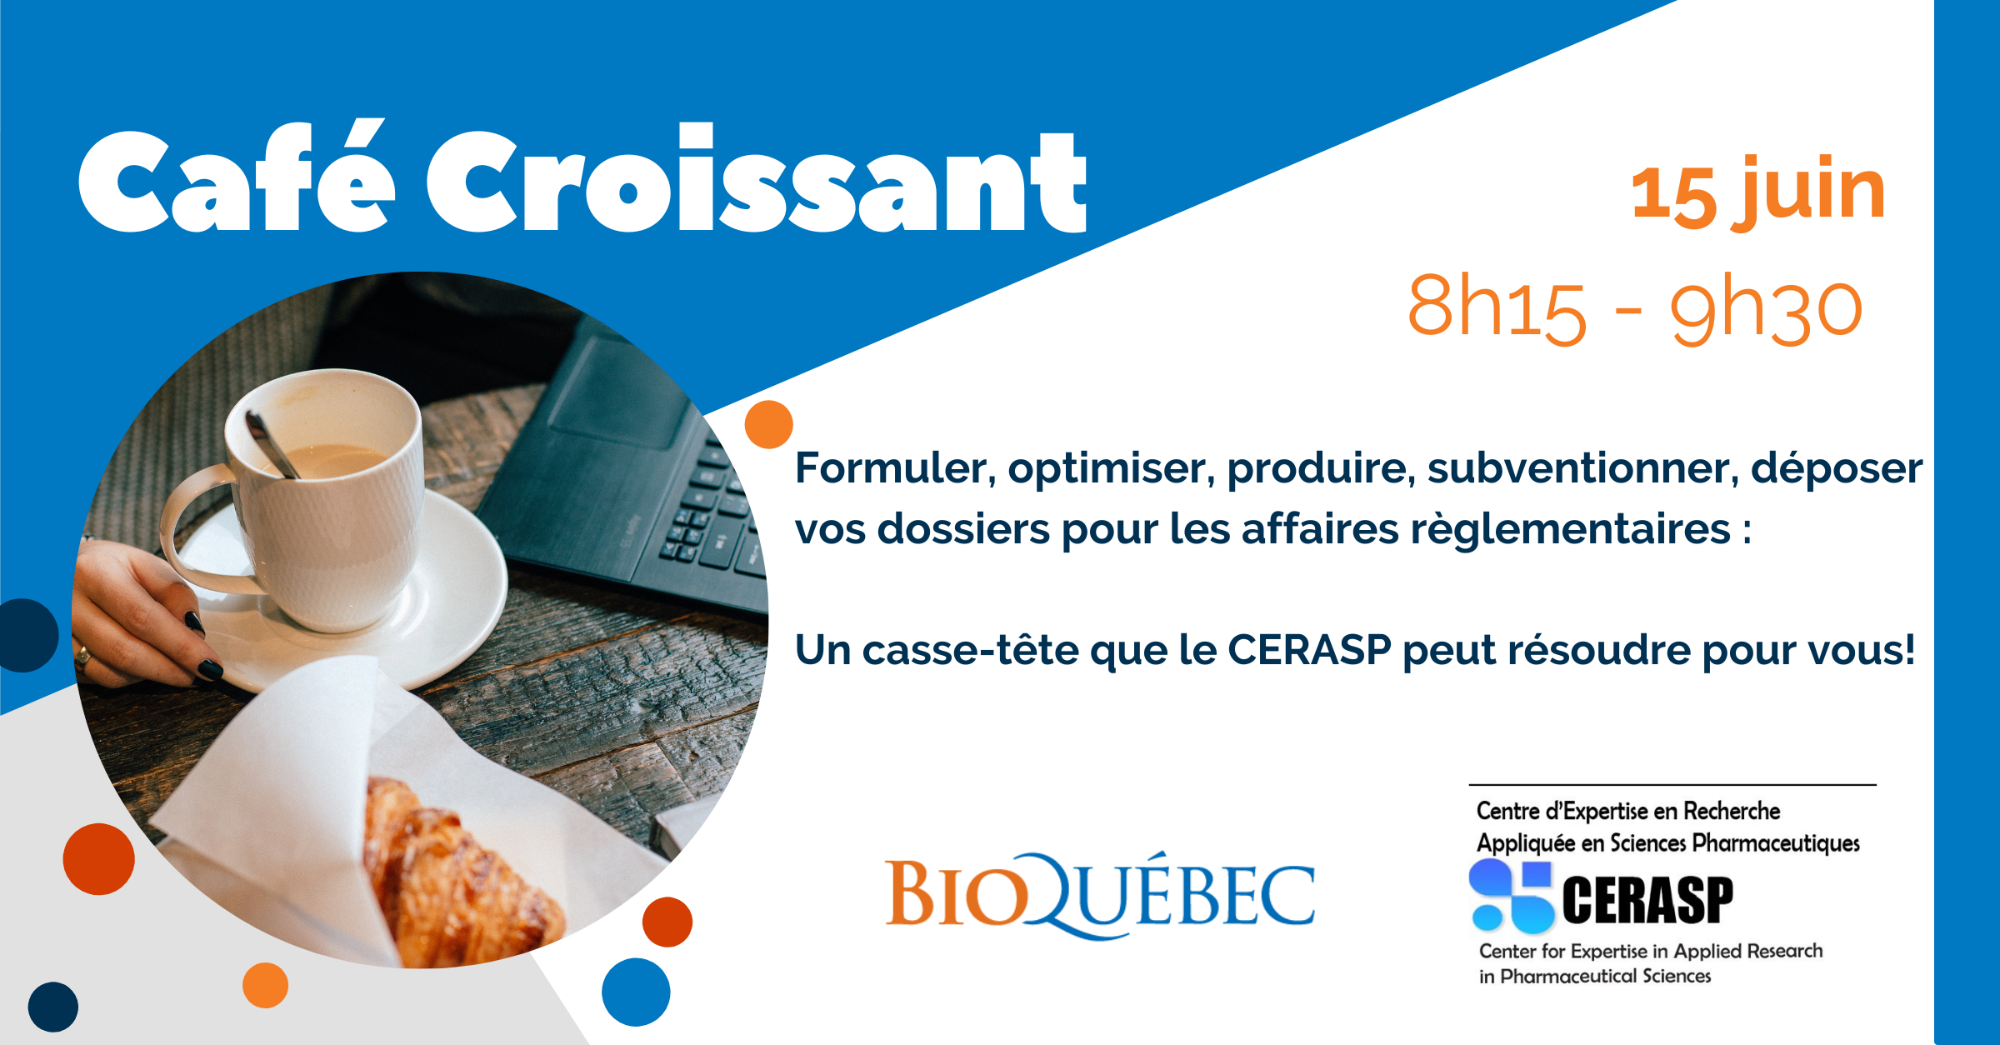 Café Croissant avec le CERASP - Formuler, optimiser, produire, subventionner, déposer vos dossiers pour les affaires règlementaires: un casse-tête que le CERASP peut résoudre pour vous !